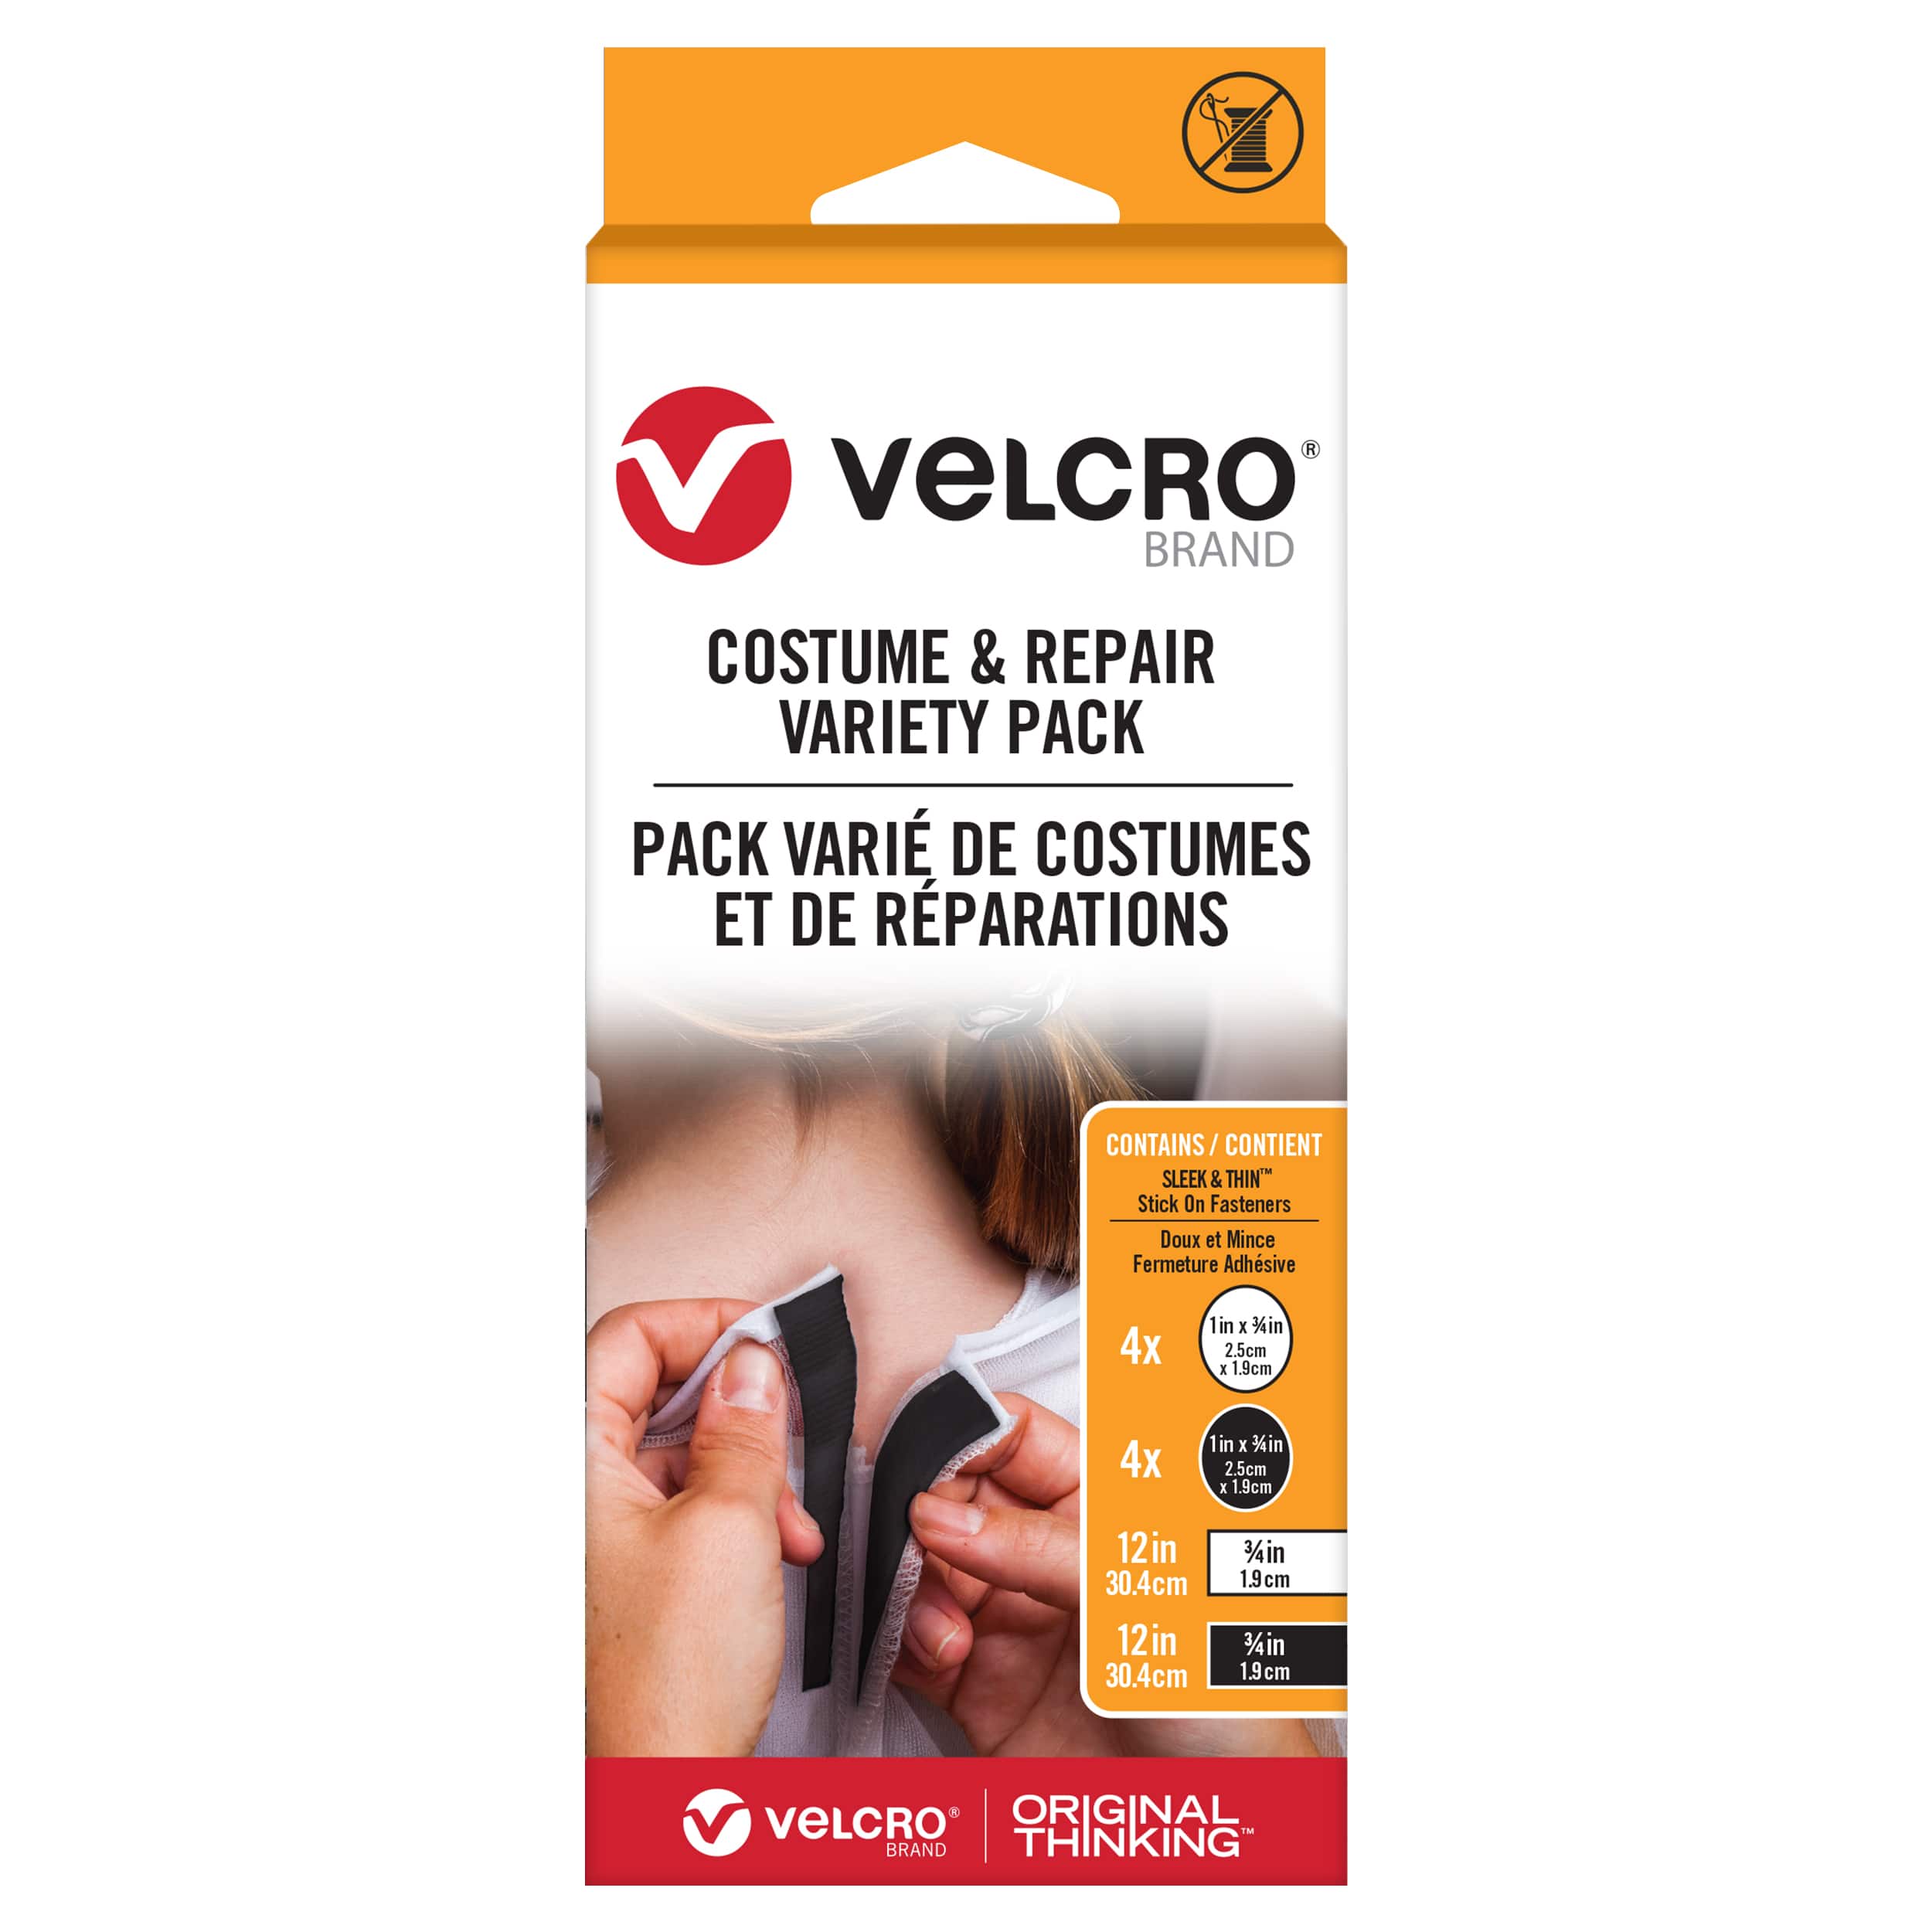 VELCRO&#xAE; Brand Costume &#x26; Repair Variety Pack